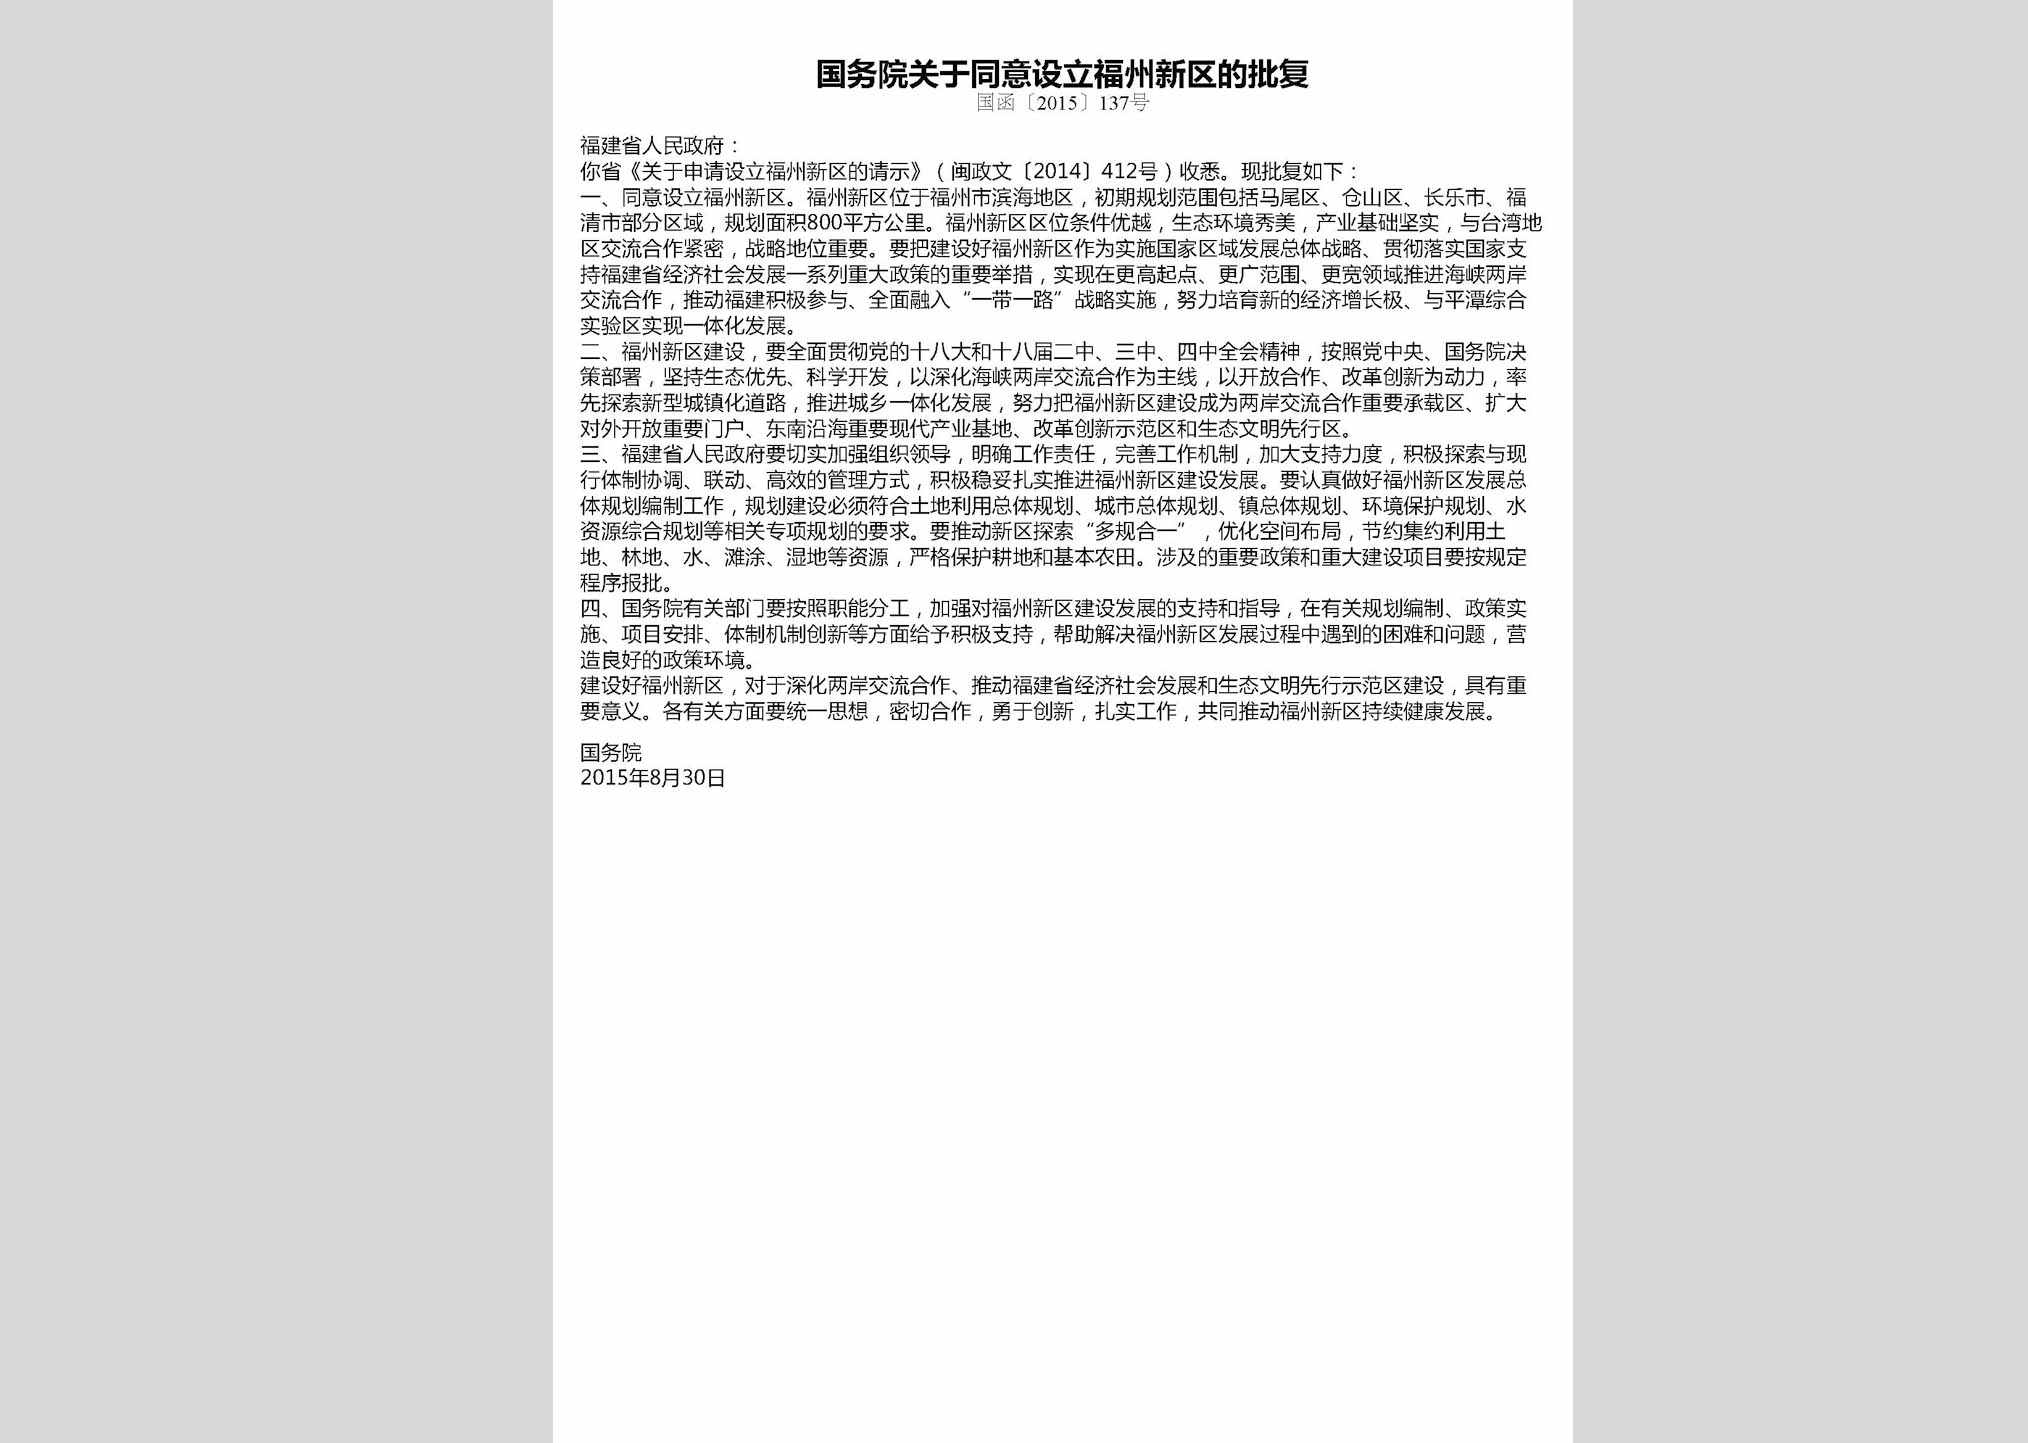 国函[2015]137号：国务院关于同意设立福州新区的批复